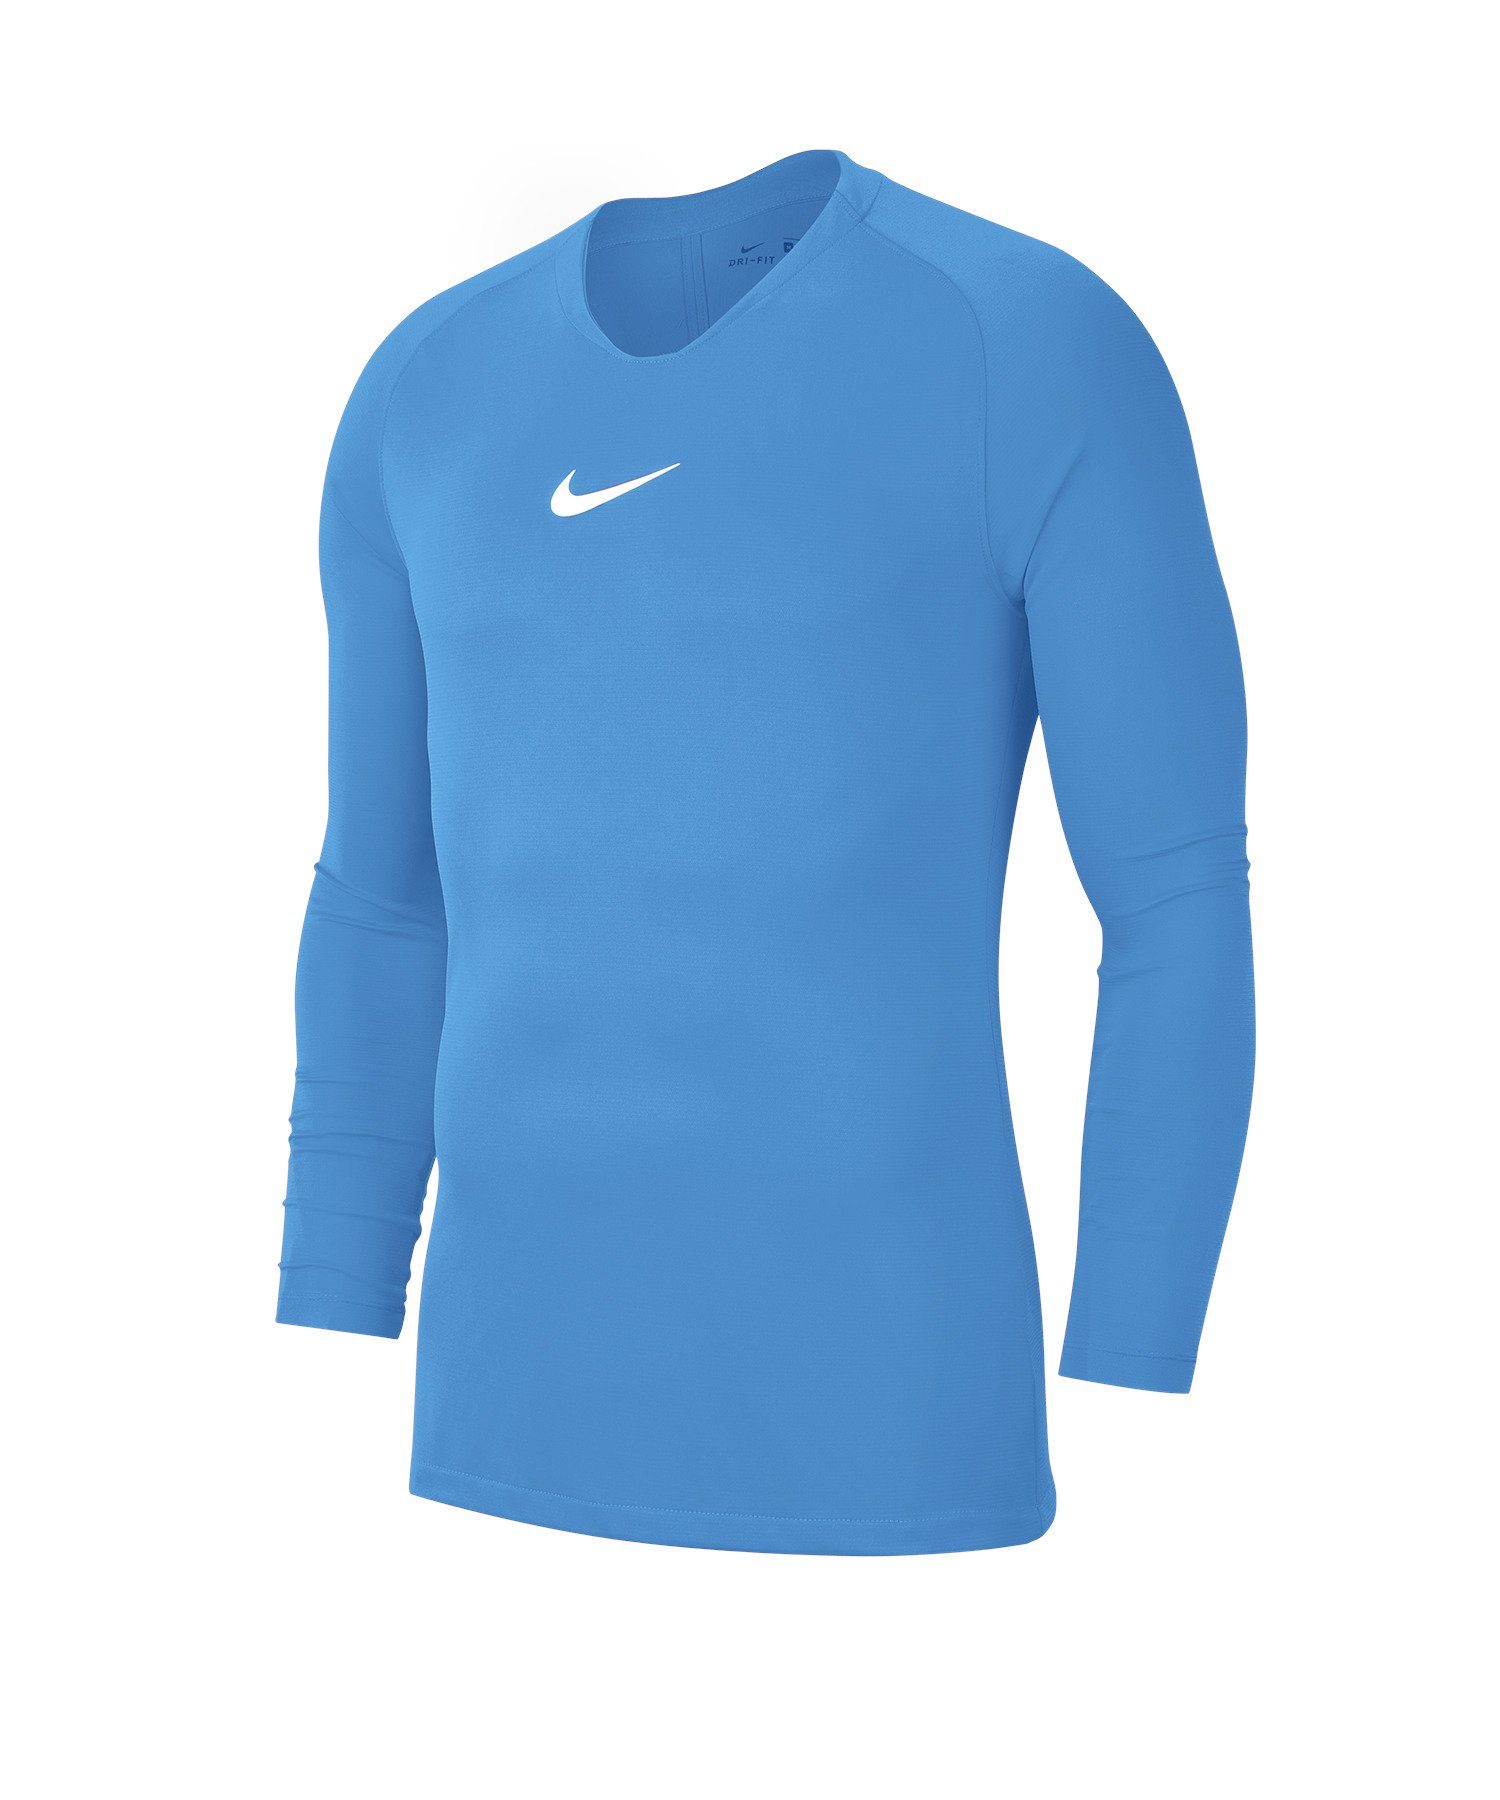 Park blau First Layer Nike Kids Daumenöffnung Top Funktionsshirt